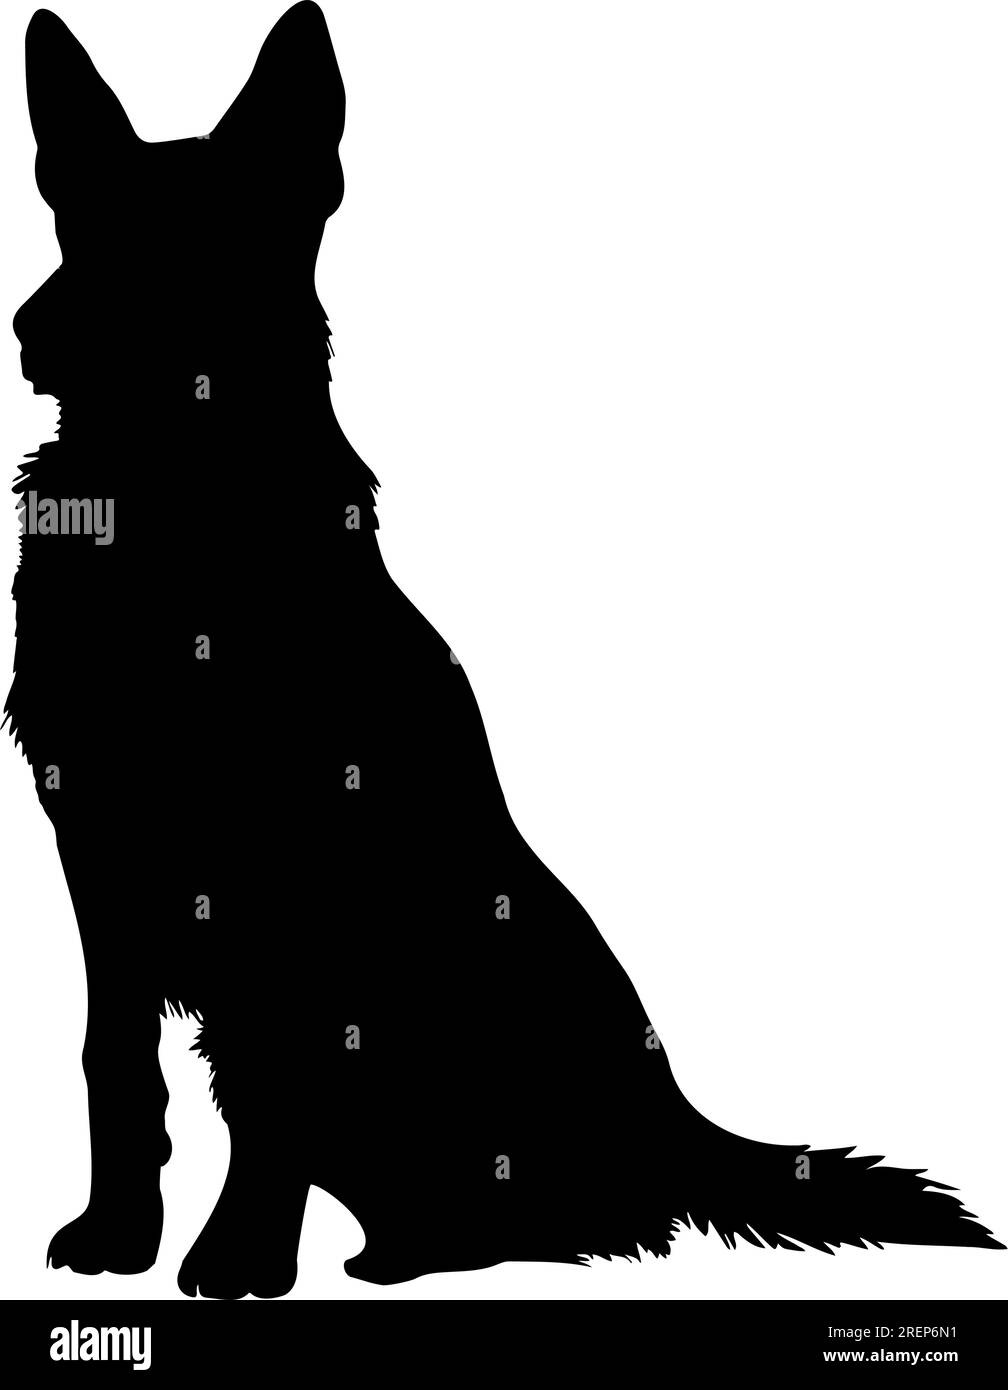 Die Silhouette des sitzenden schäferhundes. Vektordarstellung Stock Vektor